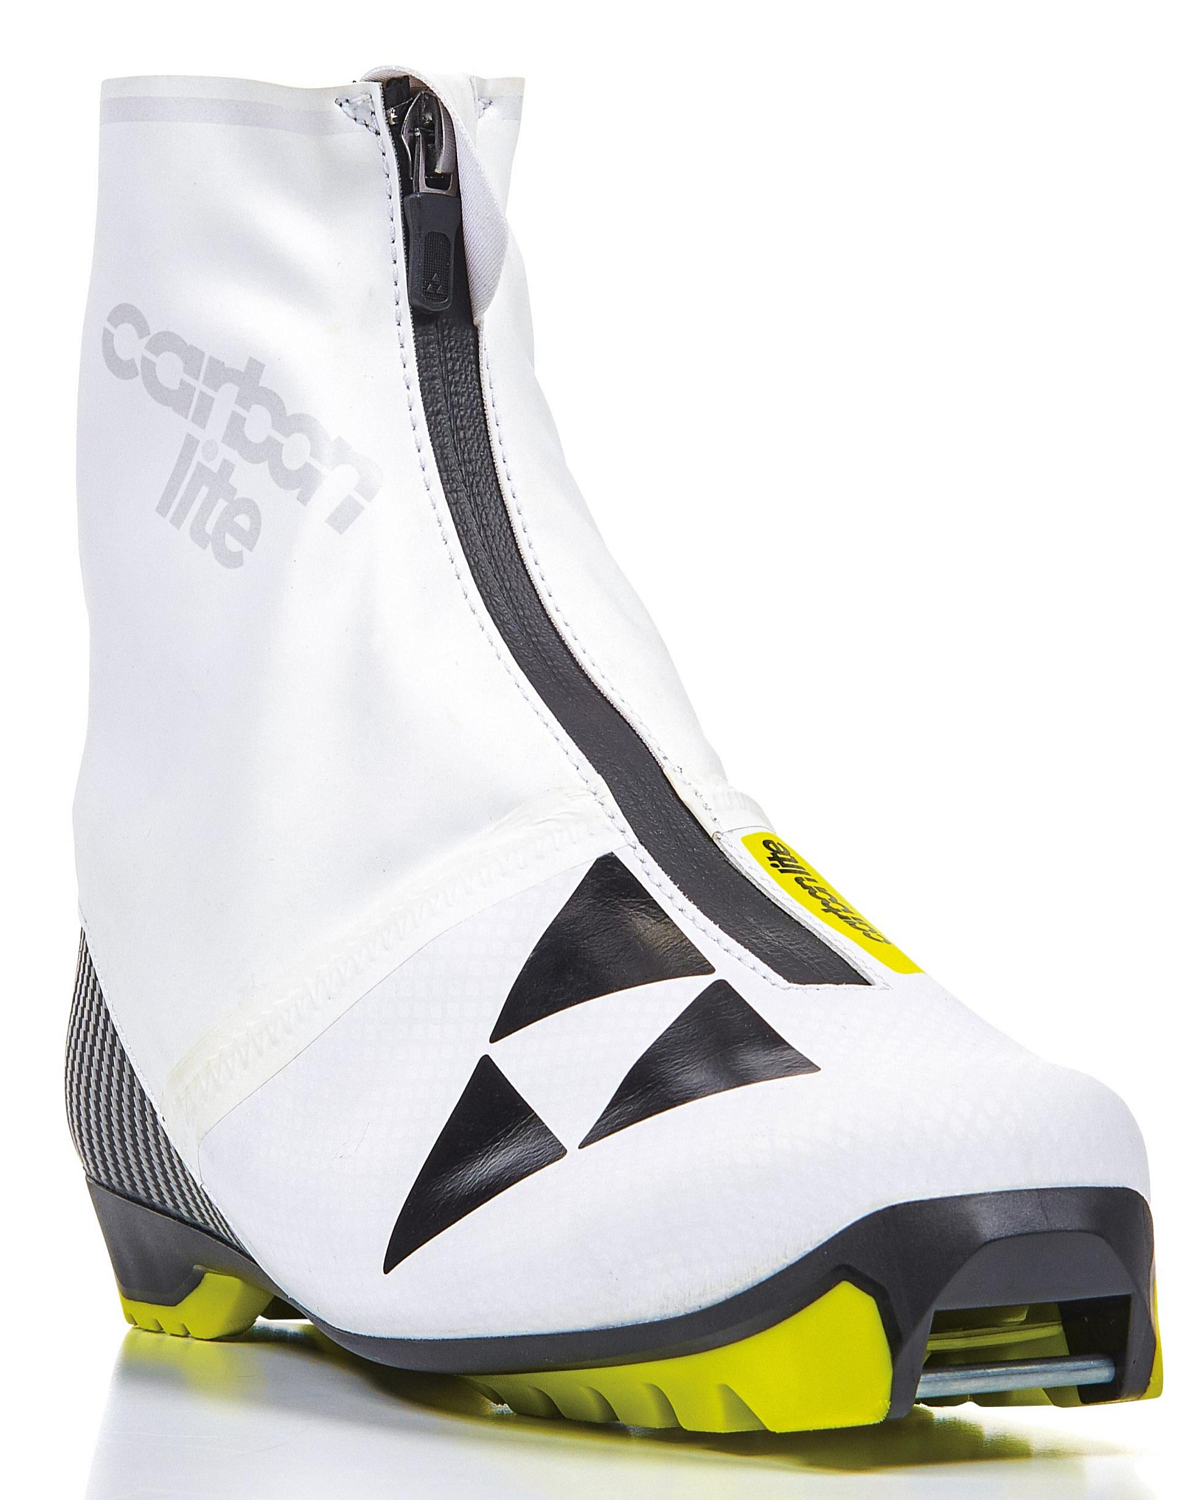 Лыжные ботинки FISCHER 2021-22 Carbonlite Classic WS White